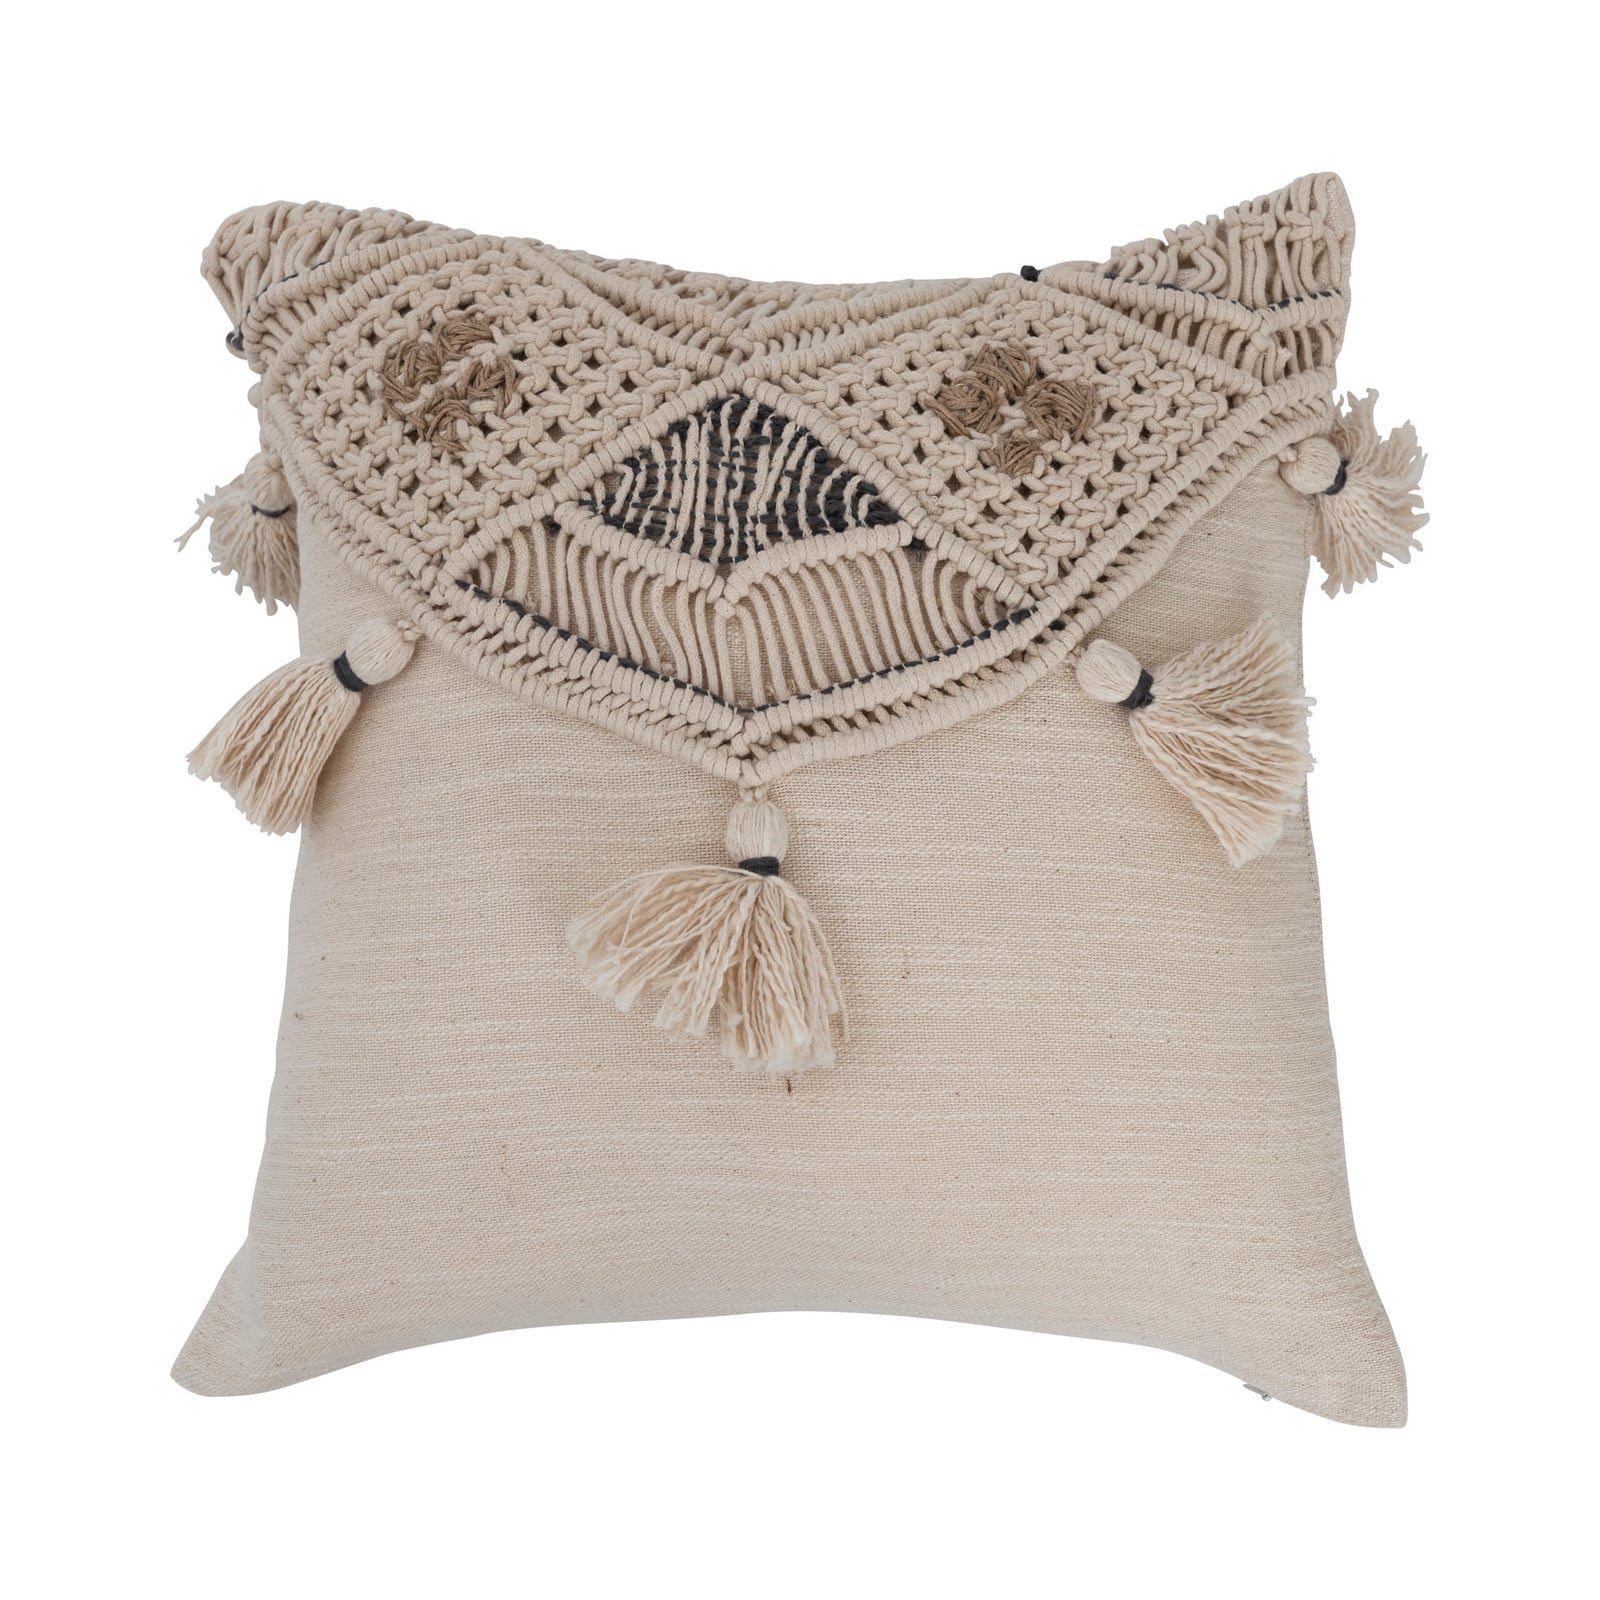 Hand-Woven Cotton &#x26; Jute Macram&#xE9; Pillow with Tassels